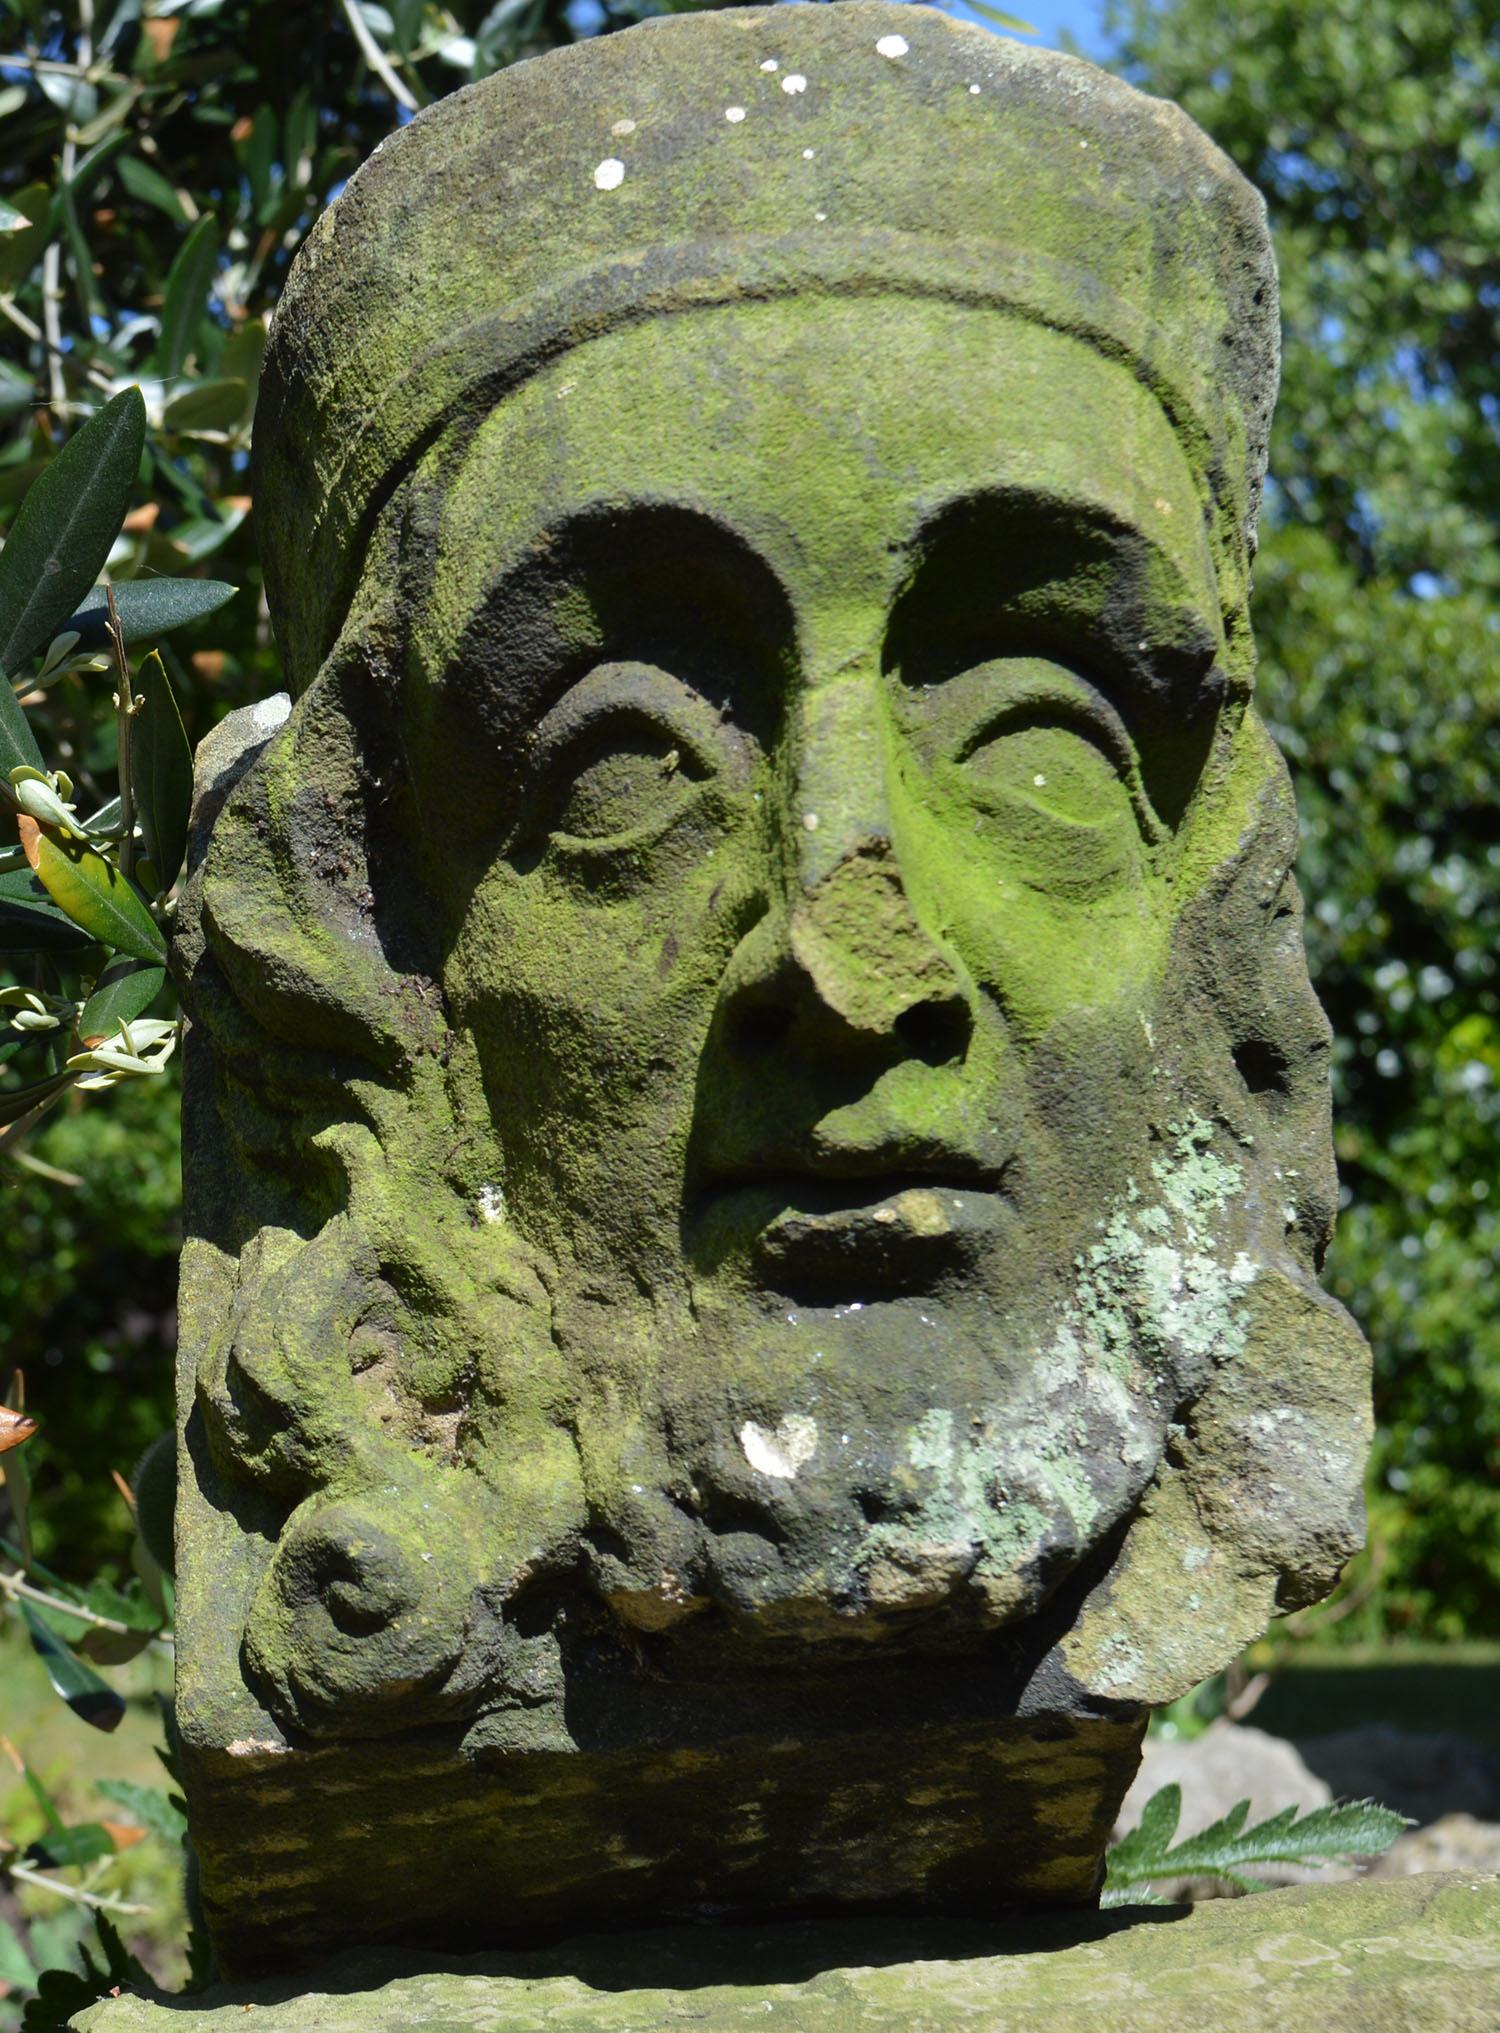 Magnifique sculpture en pierre d'un visage de roi.

Probablement en anglais.

Je l'ai daté au moins du 19e siècle. Il est très probable que cela soit antérieur à cette date. Difficile d'être précis.

Livraison gratuite au Royaume-Uni

